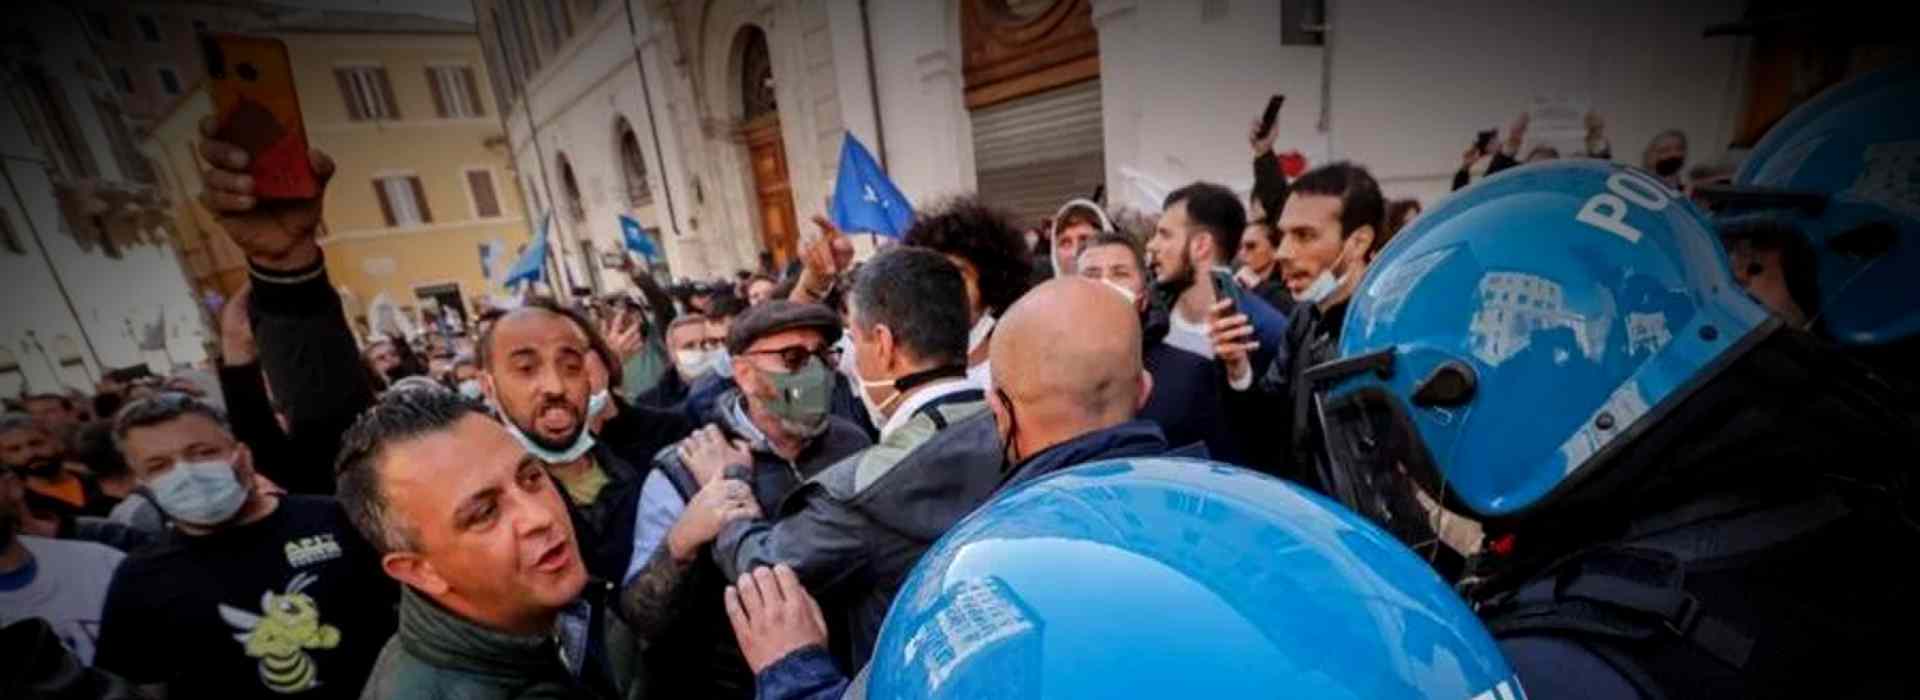 La protesta delle Partite Iva: tensione a Milano e Roma